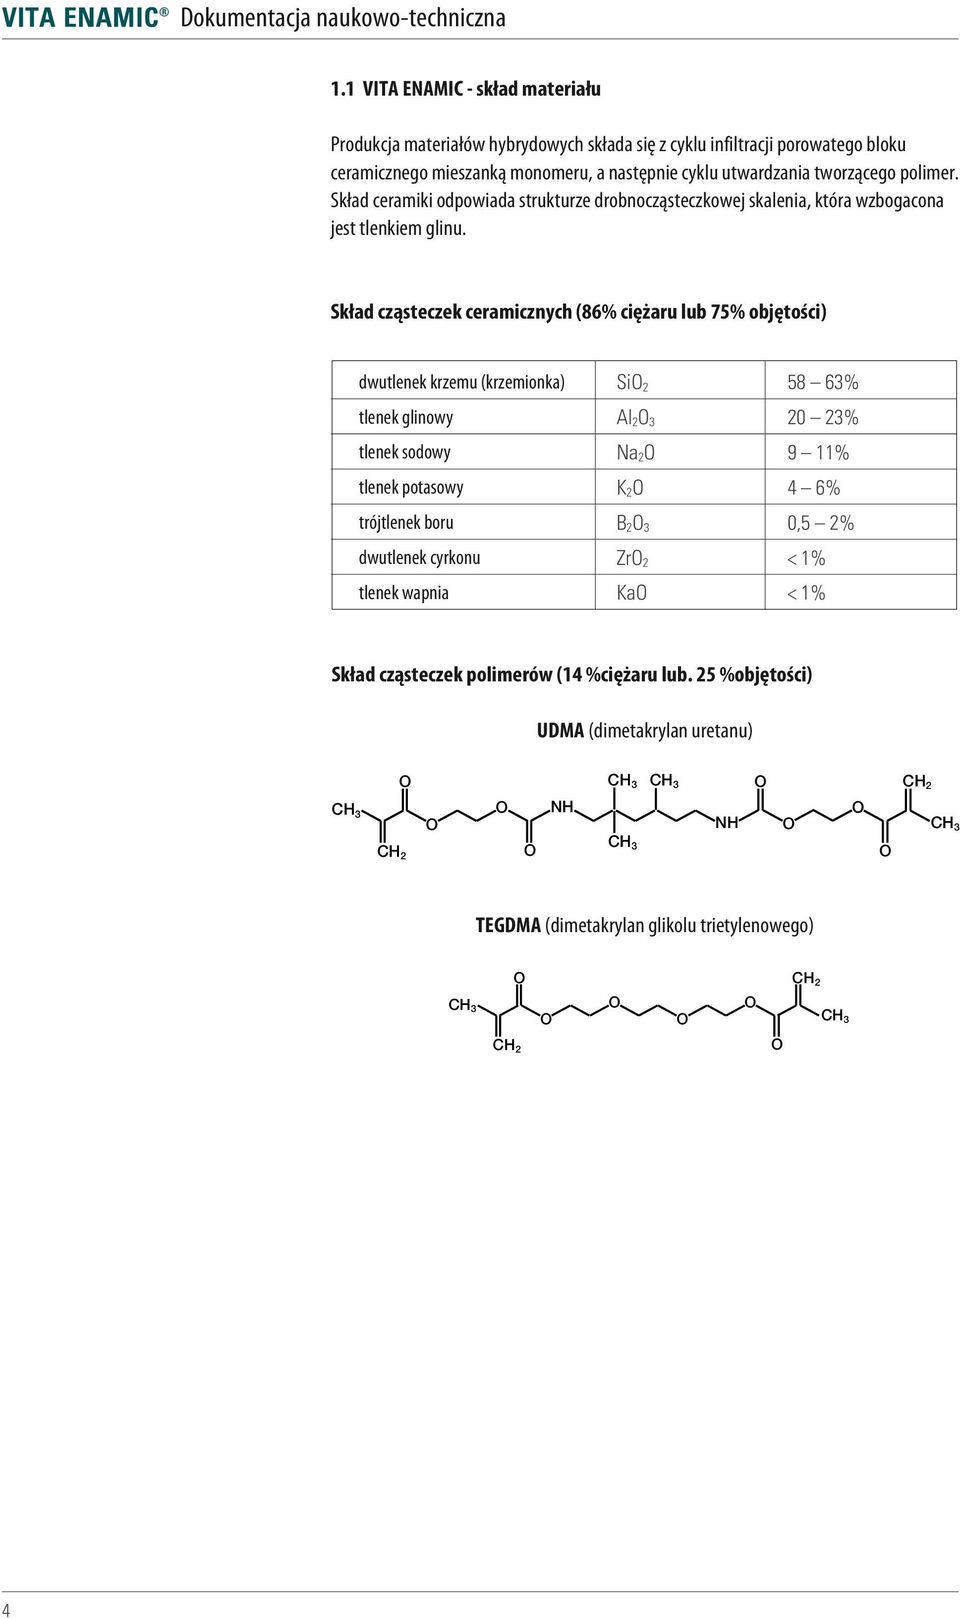 Skład cząsteczek ceramicznych (86% ciężaru lub 75% objętości) dwutlenek krzemu (krzemionka) tlenek glinowy tlenek sodowy tlenek potasowy trójtlenek boru dwutlenek cyrkonu tlenek wapnia SiO 2 Al 2 O 3